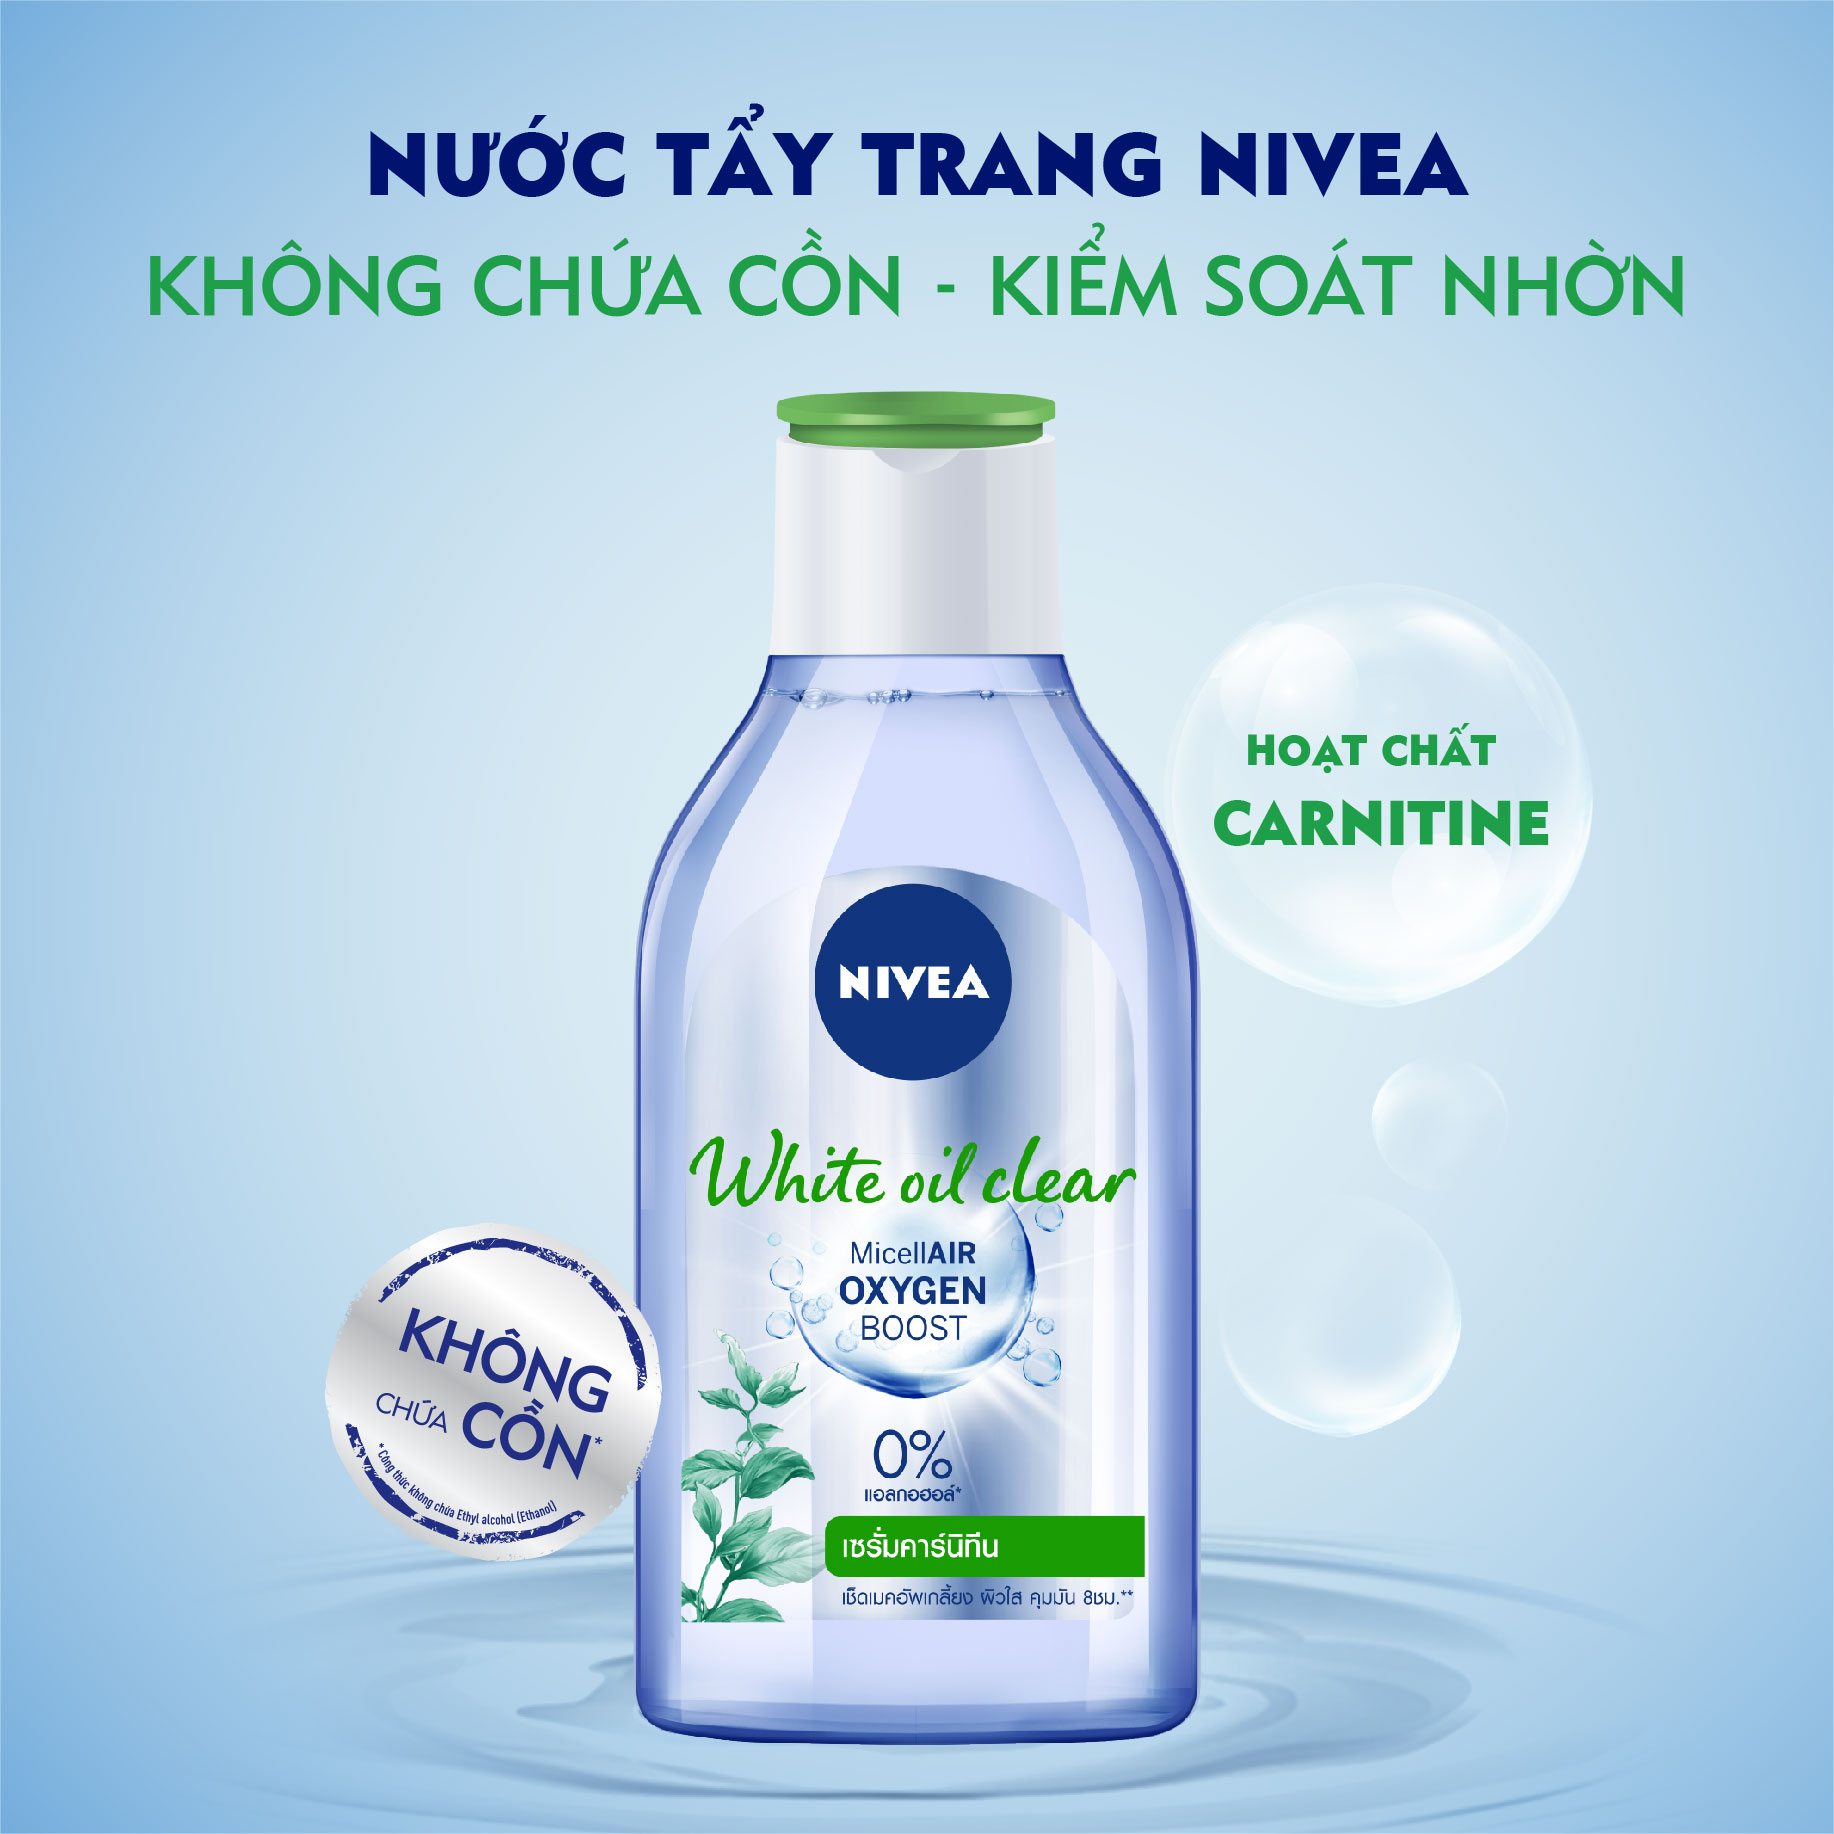 NIVEA, Nước Tẩy Trang Nivea White Oil Clear Giúp Sạch Nhờn Dành Cho Da Nhờn  400ml | Watsons Vietnam